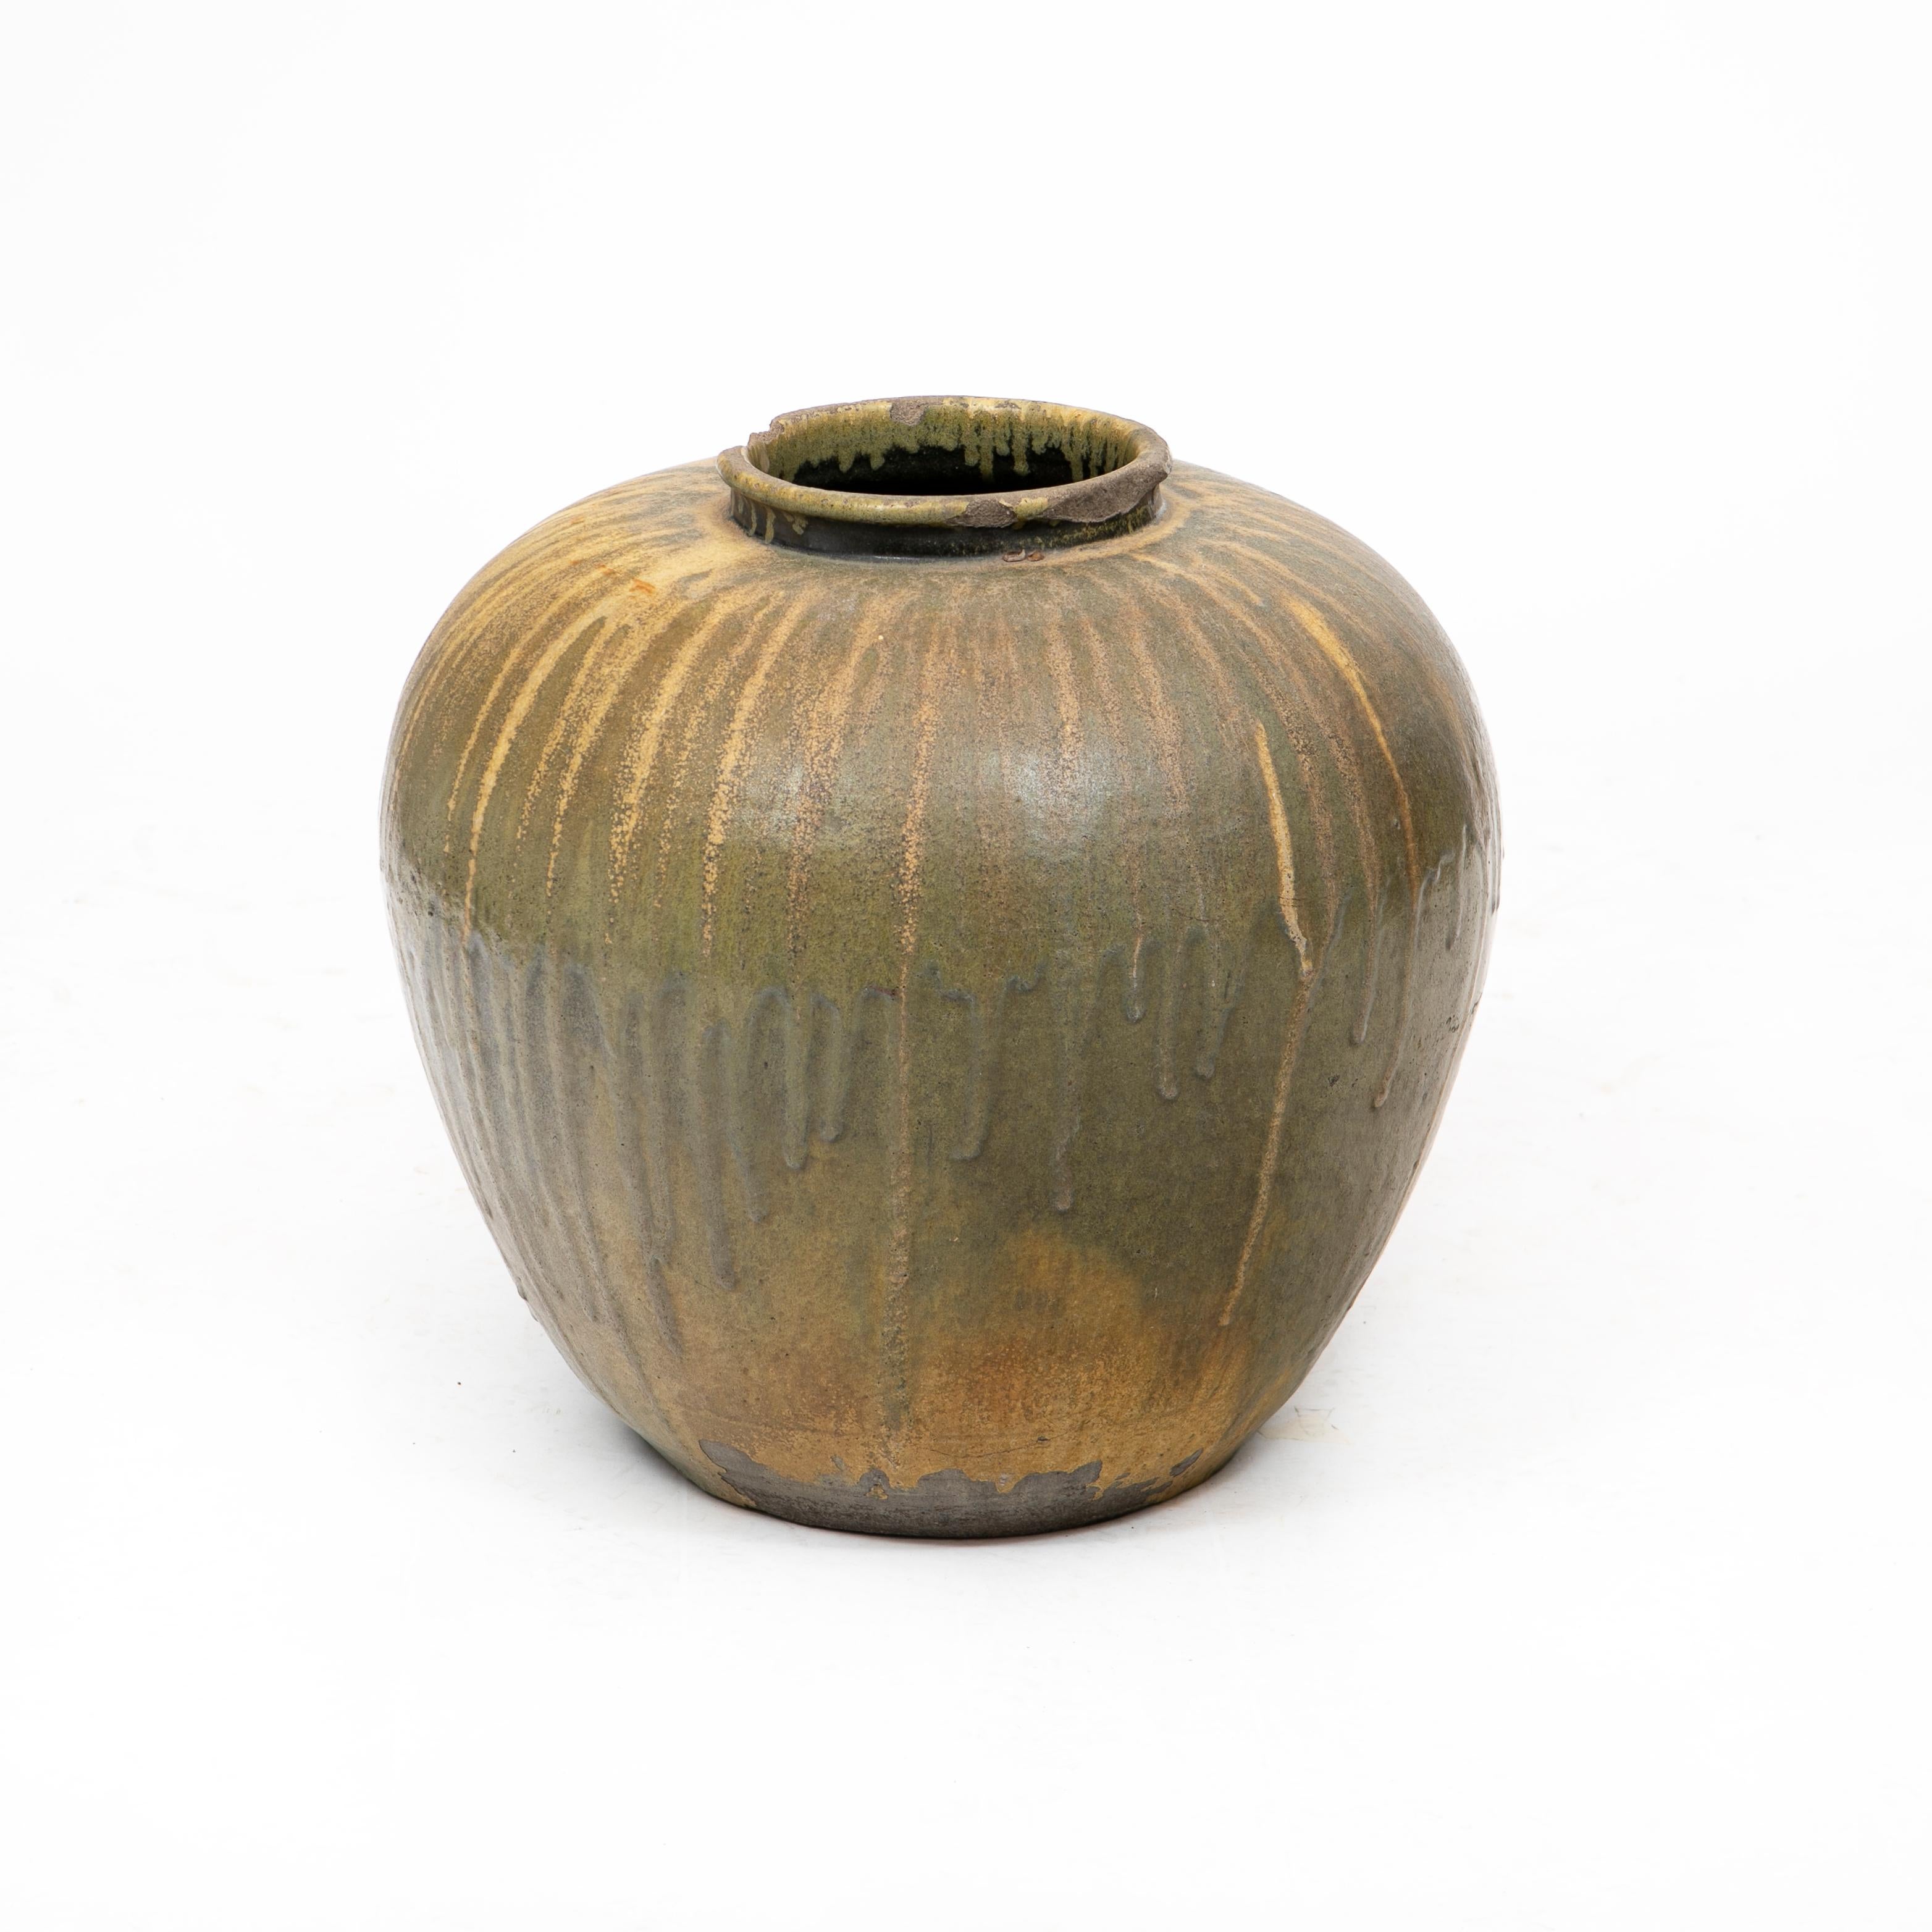 Große dekorative Vase aus japanischem Steinzeug mit tropfender Glasur in grünlichen und ockerfarbenen Tönen.

Alter Chip am oberen Rand.

Meiji-Periode, 19. Jahrhundert.